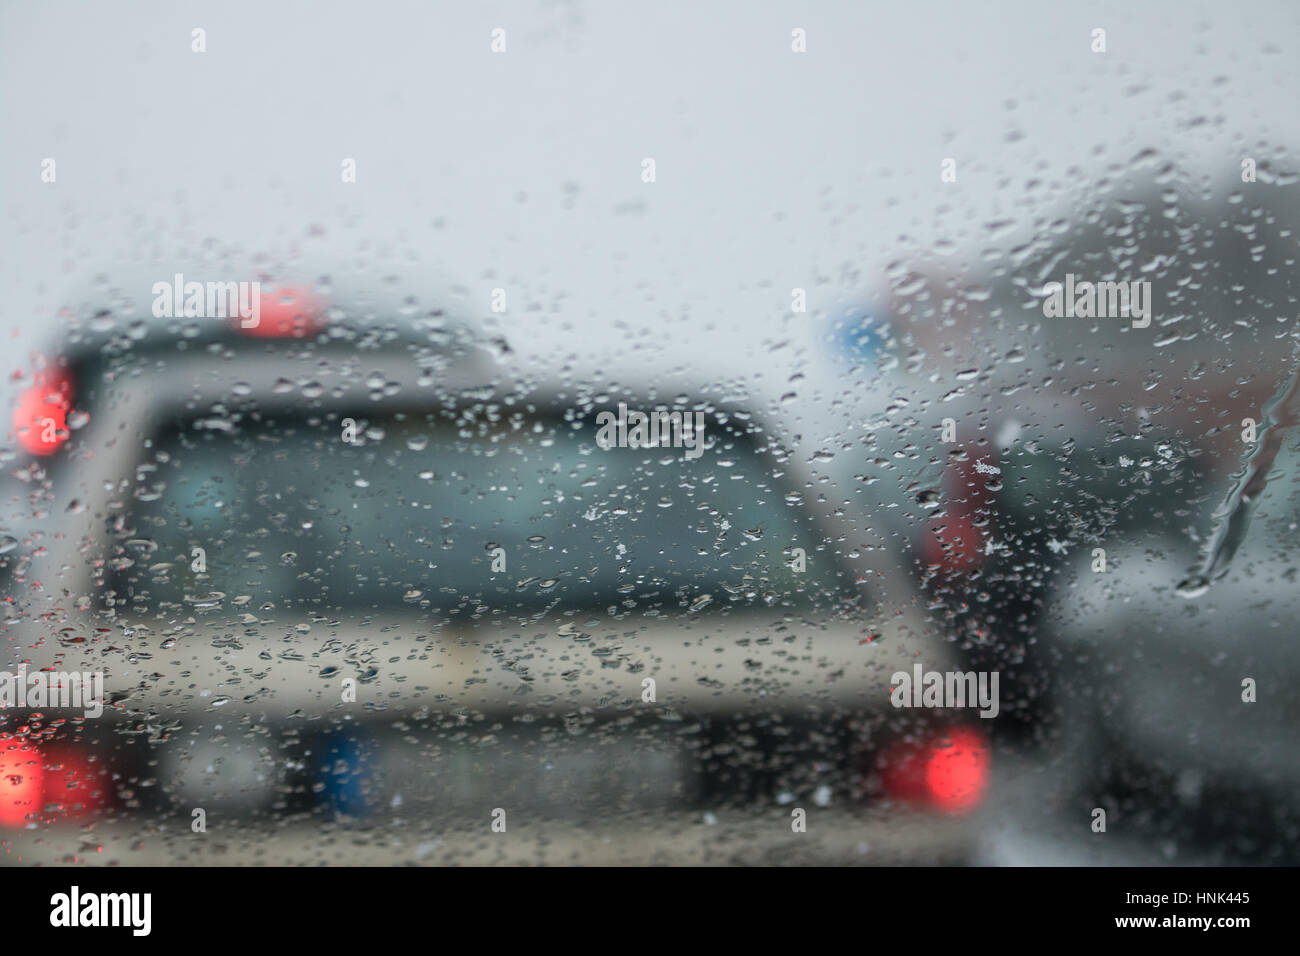 Schlechtes Wetter auf einer Autobahn - Stau Stockfoto